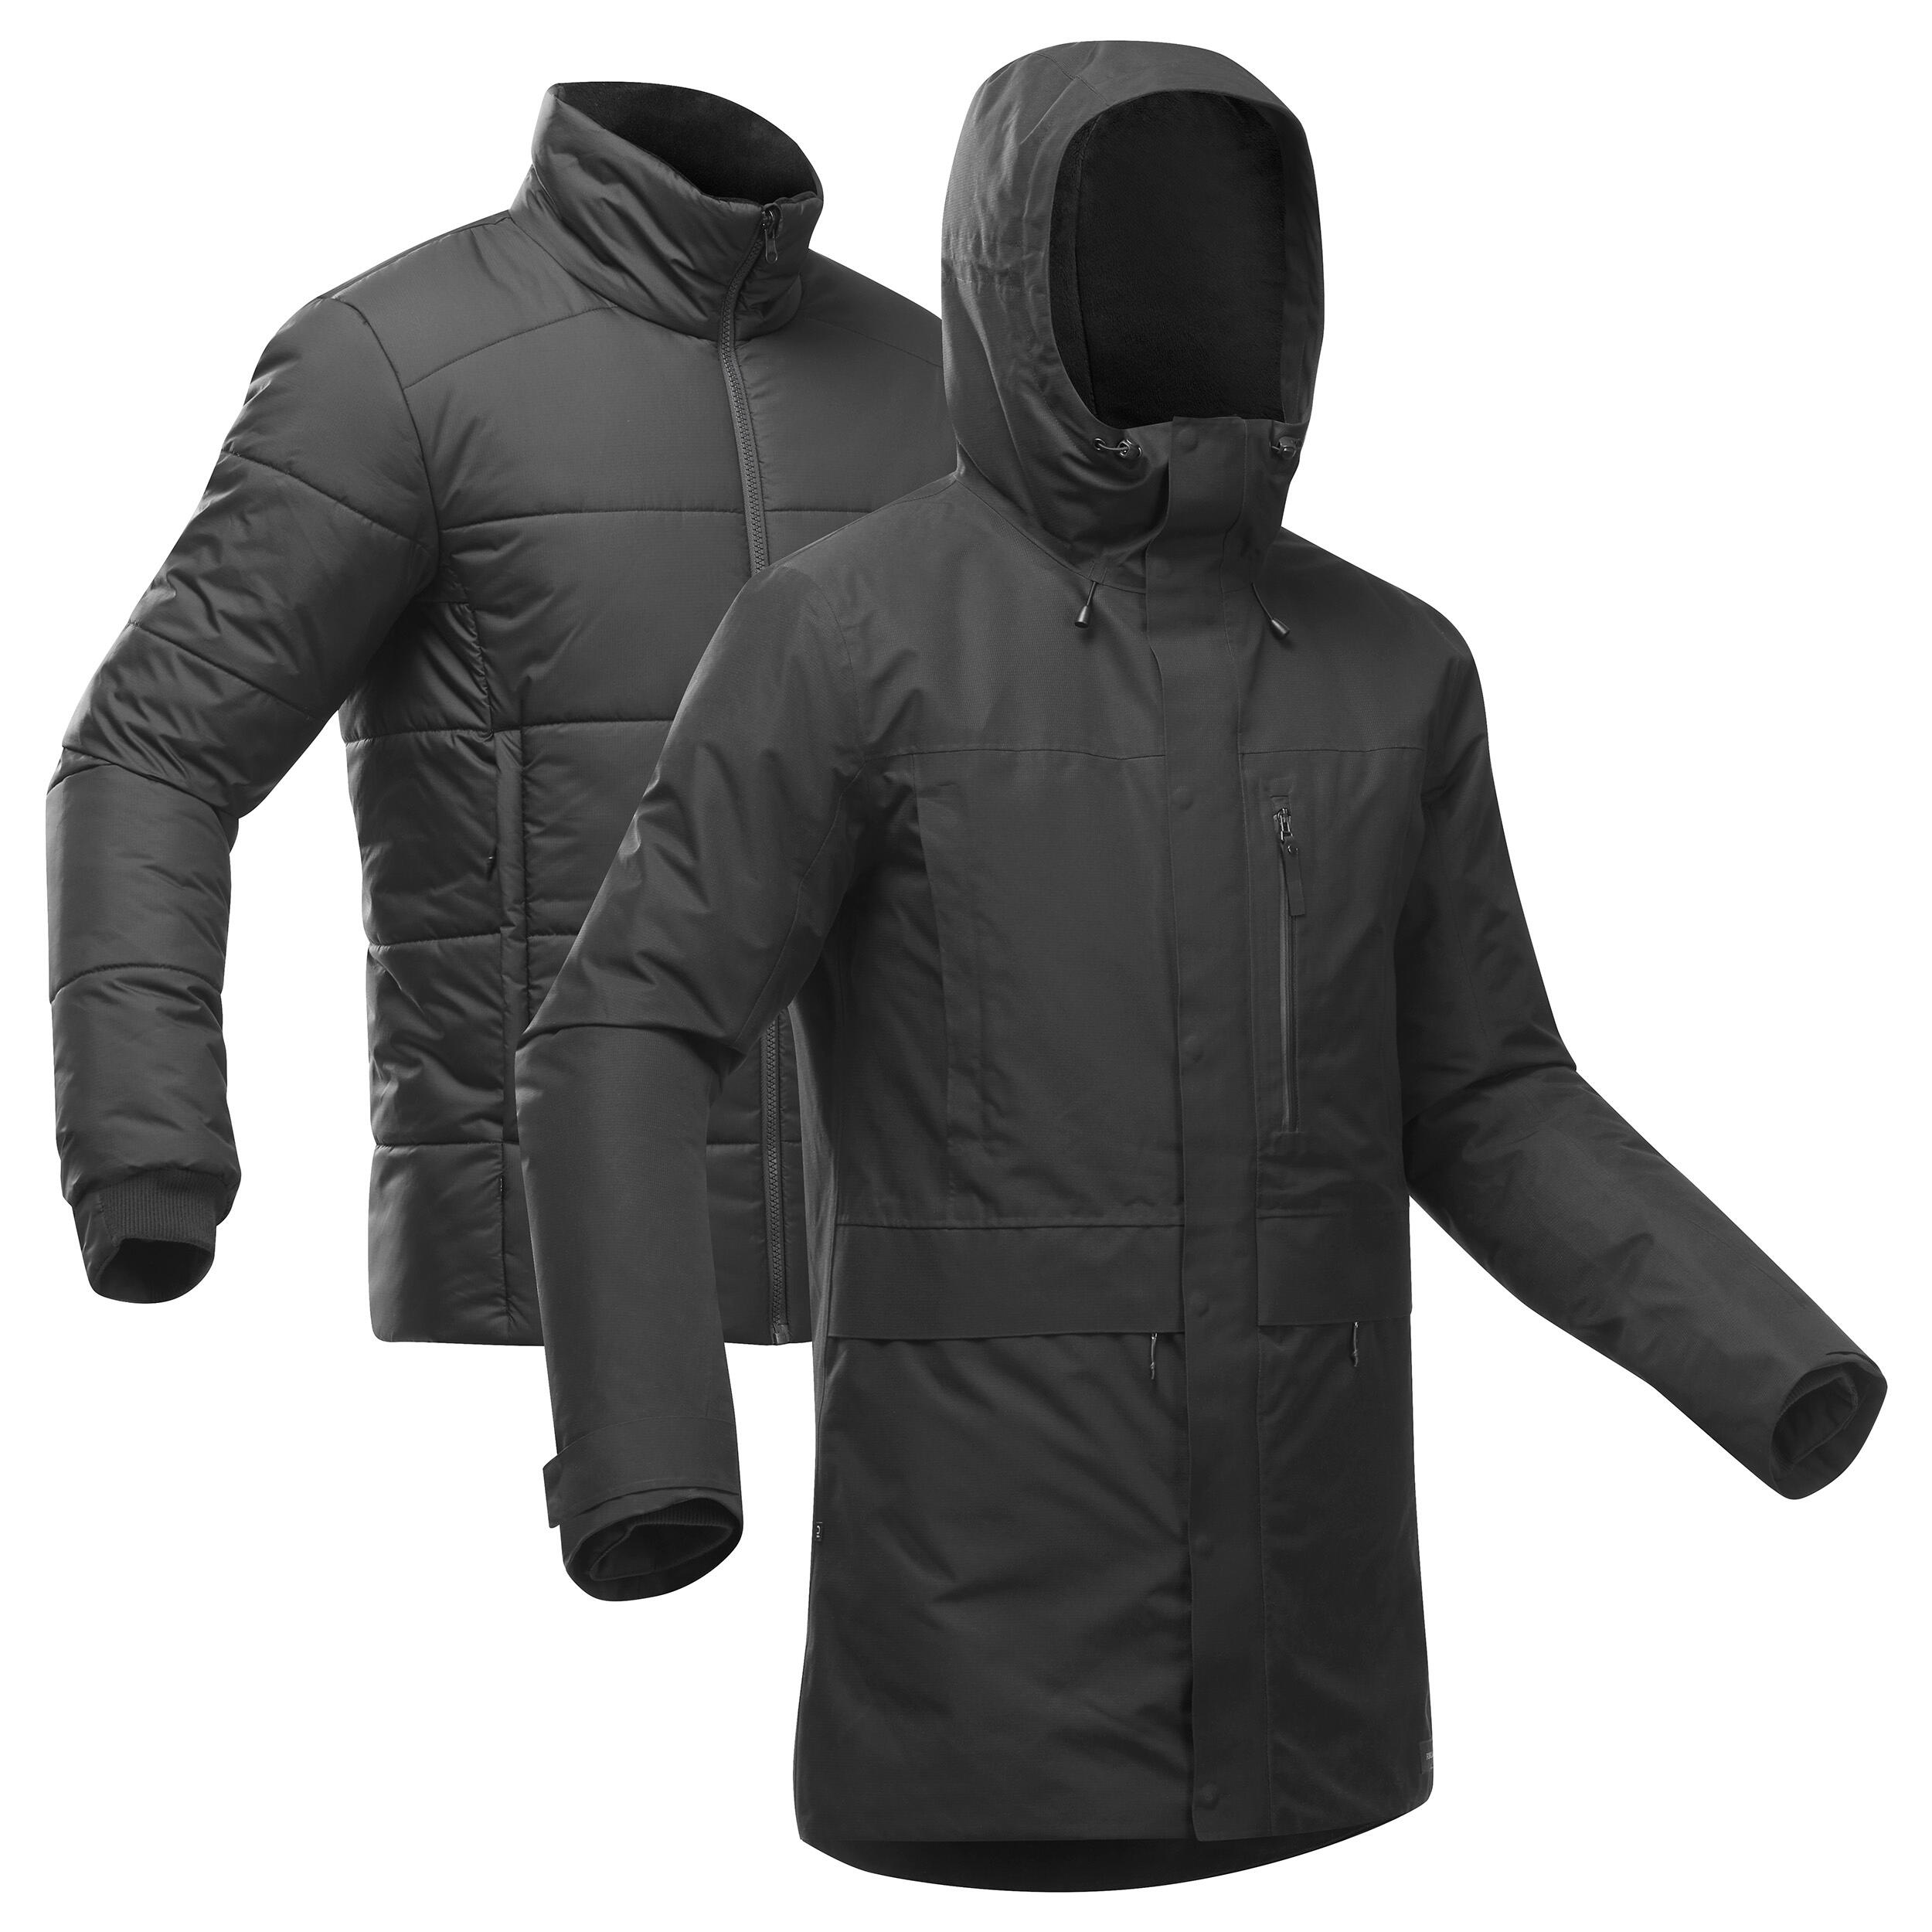 Men's 3-in-1 Waterproof Travel Trekking Jacket Travel 900 Warm -15°C - black  13/20